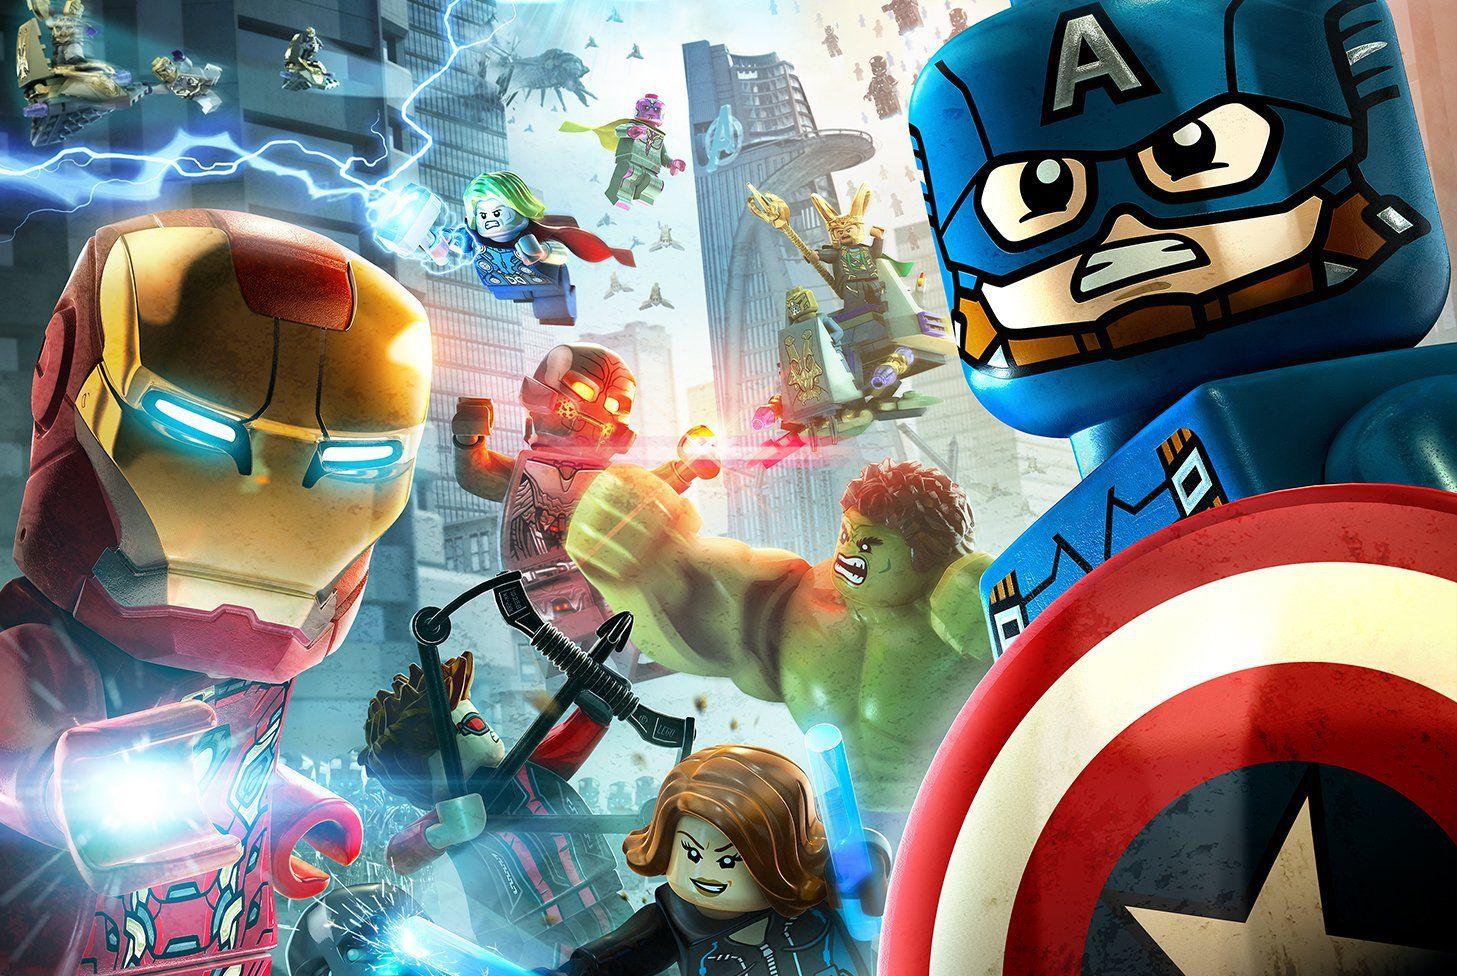 Lego Marvel's Avengers Review